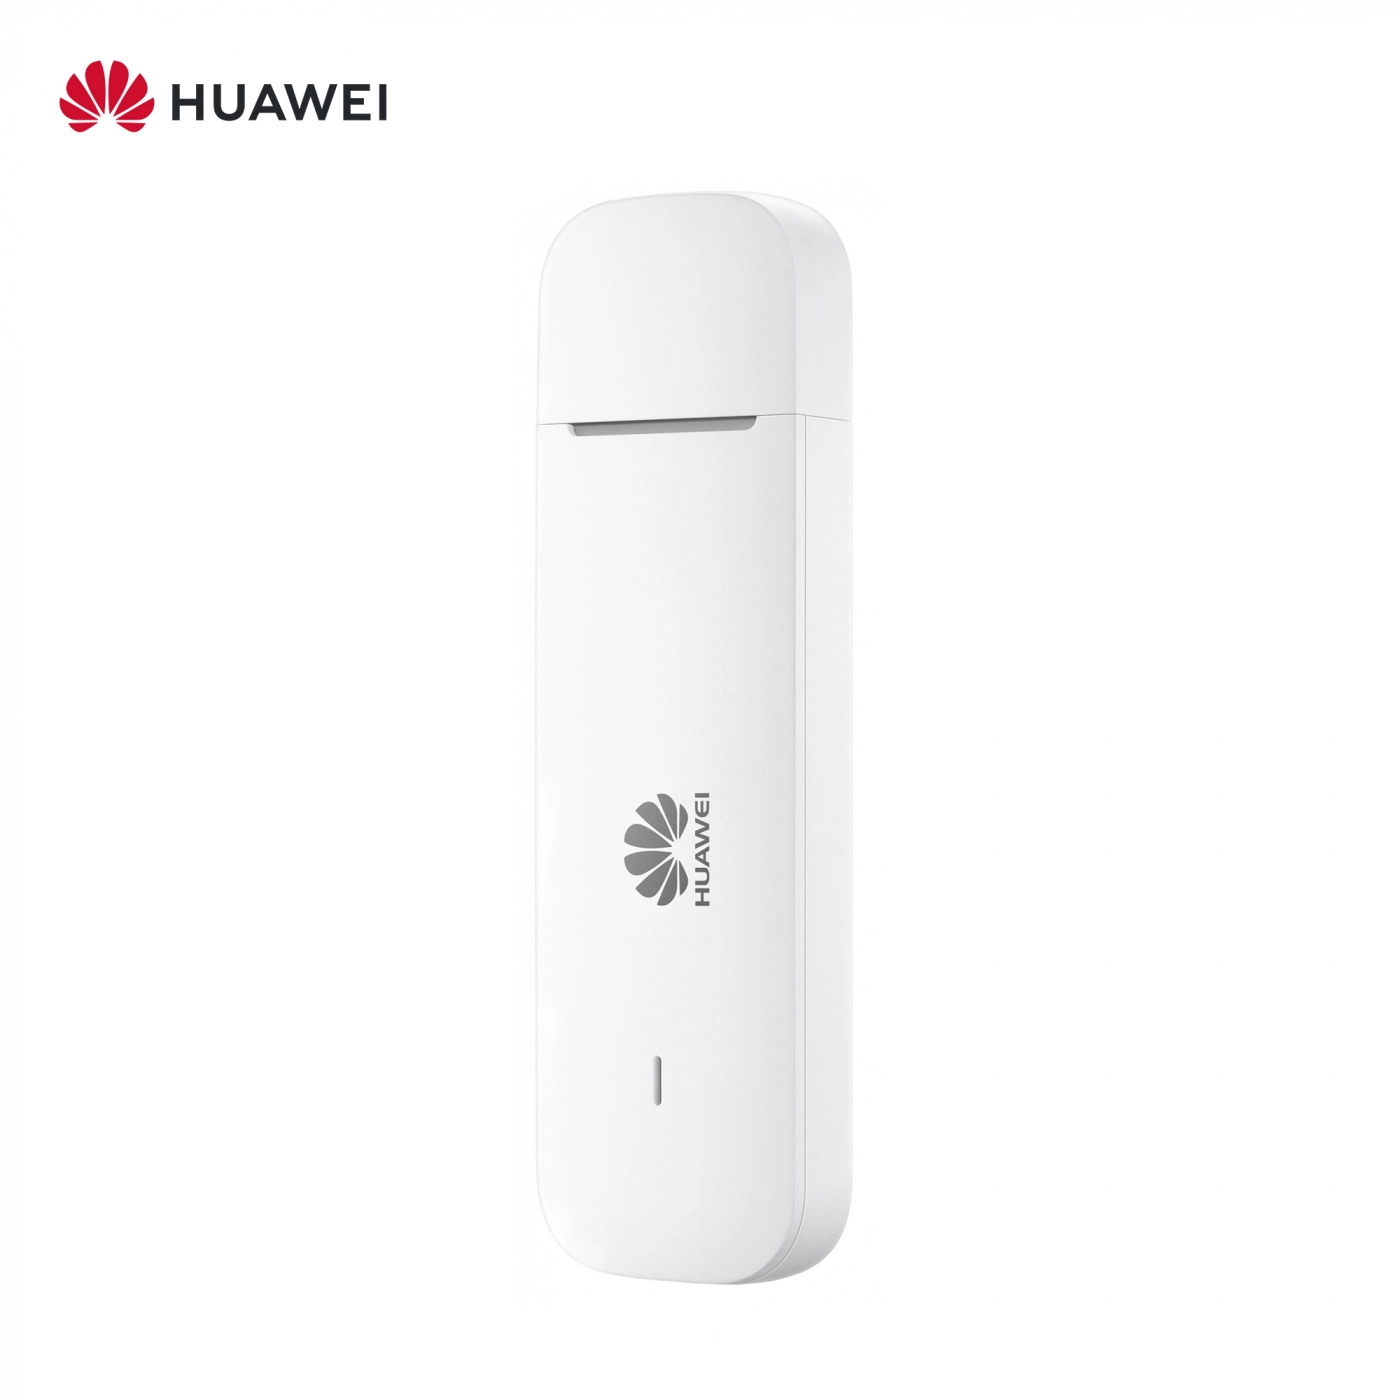 Купить Модем Huawei E3372 - фото 3